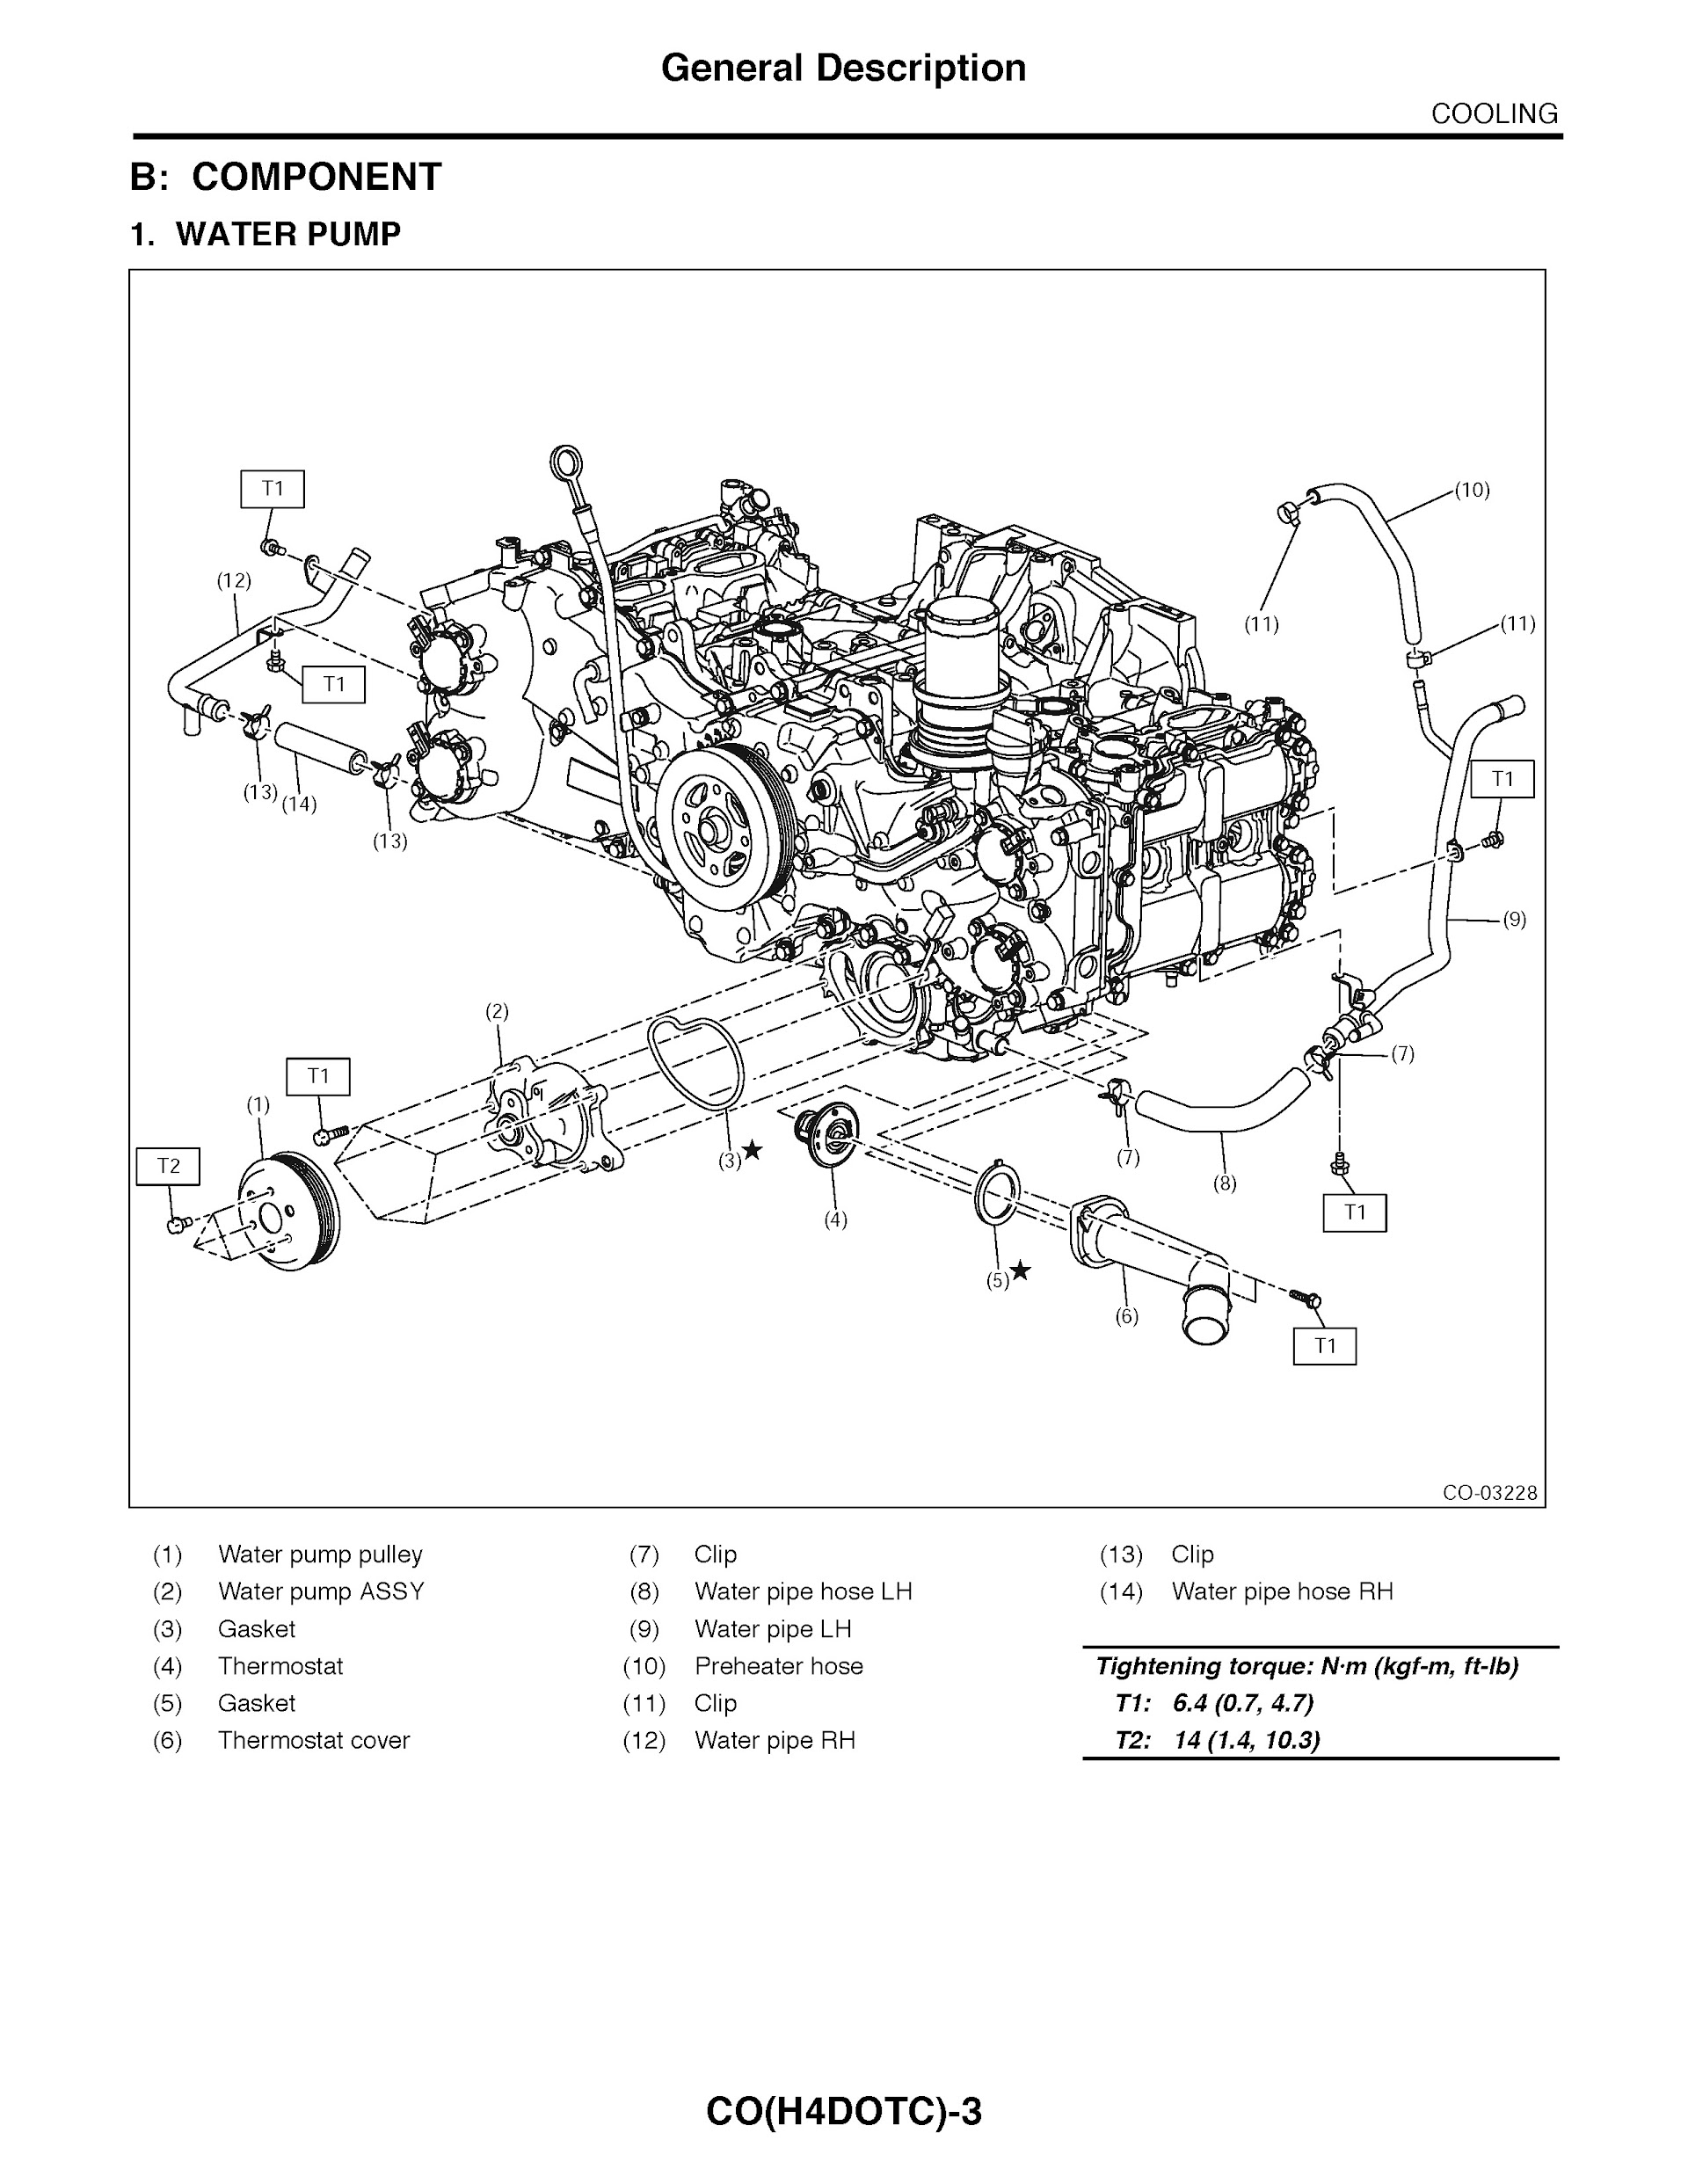 2015 Subaru Forester Repair Manual, Cooling